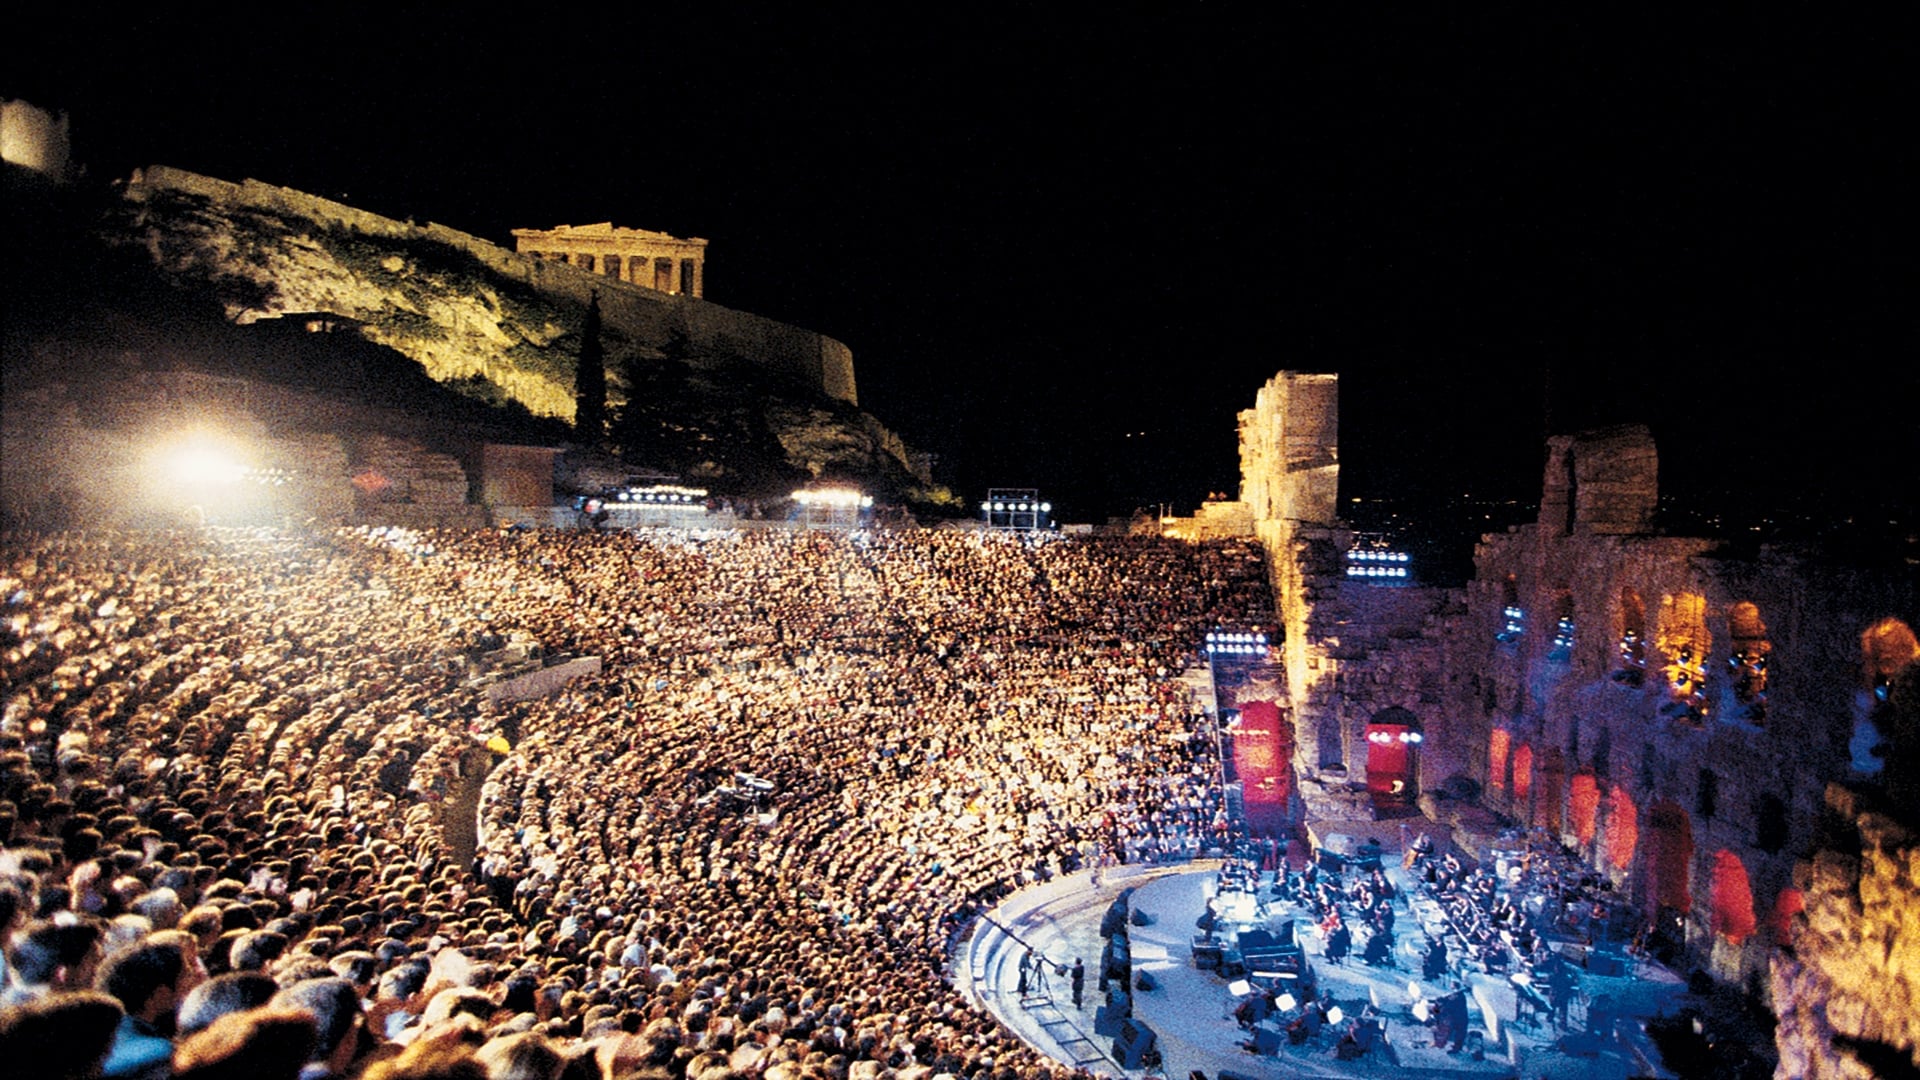 دانلود کنسرت Yanni: Live at the Acropolis 1994